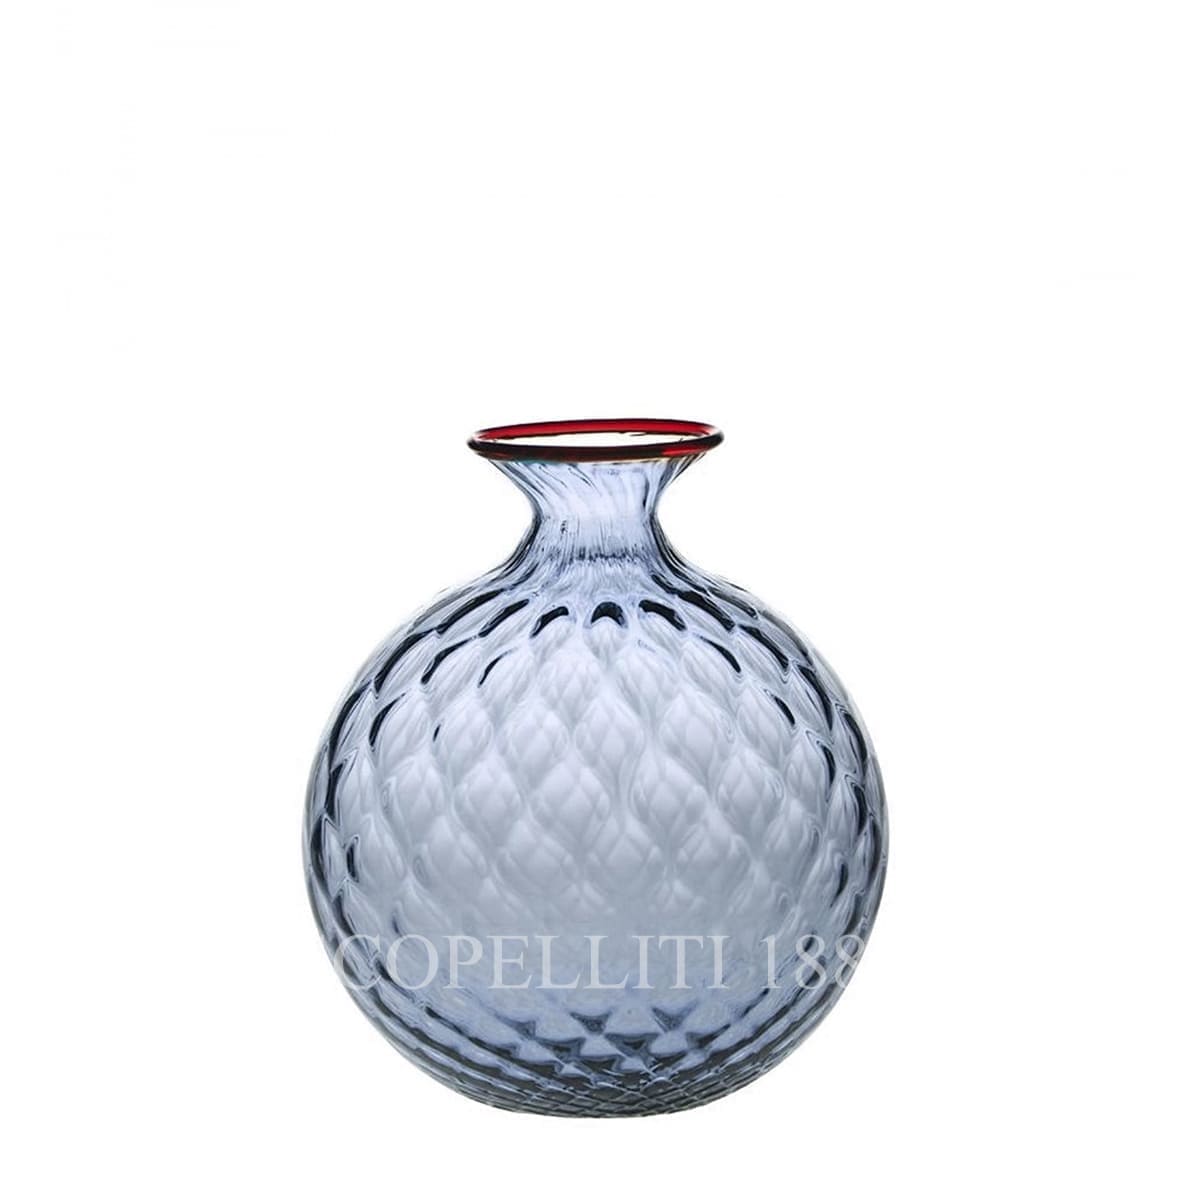 Venini Monofiore Balloton Vase x-small grape